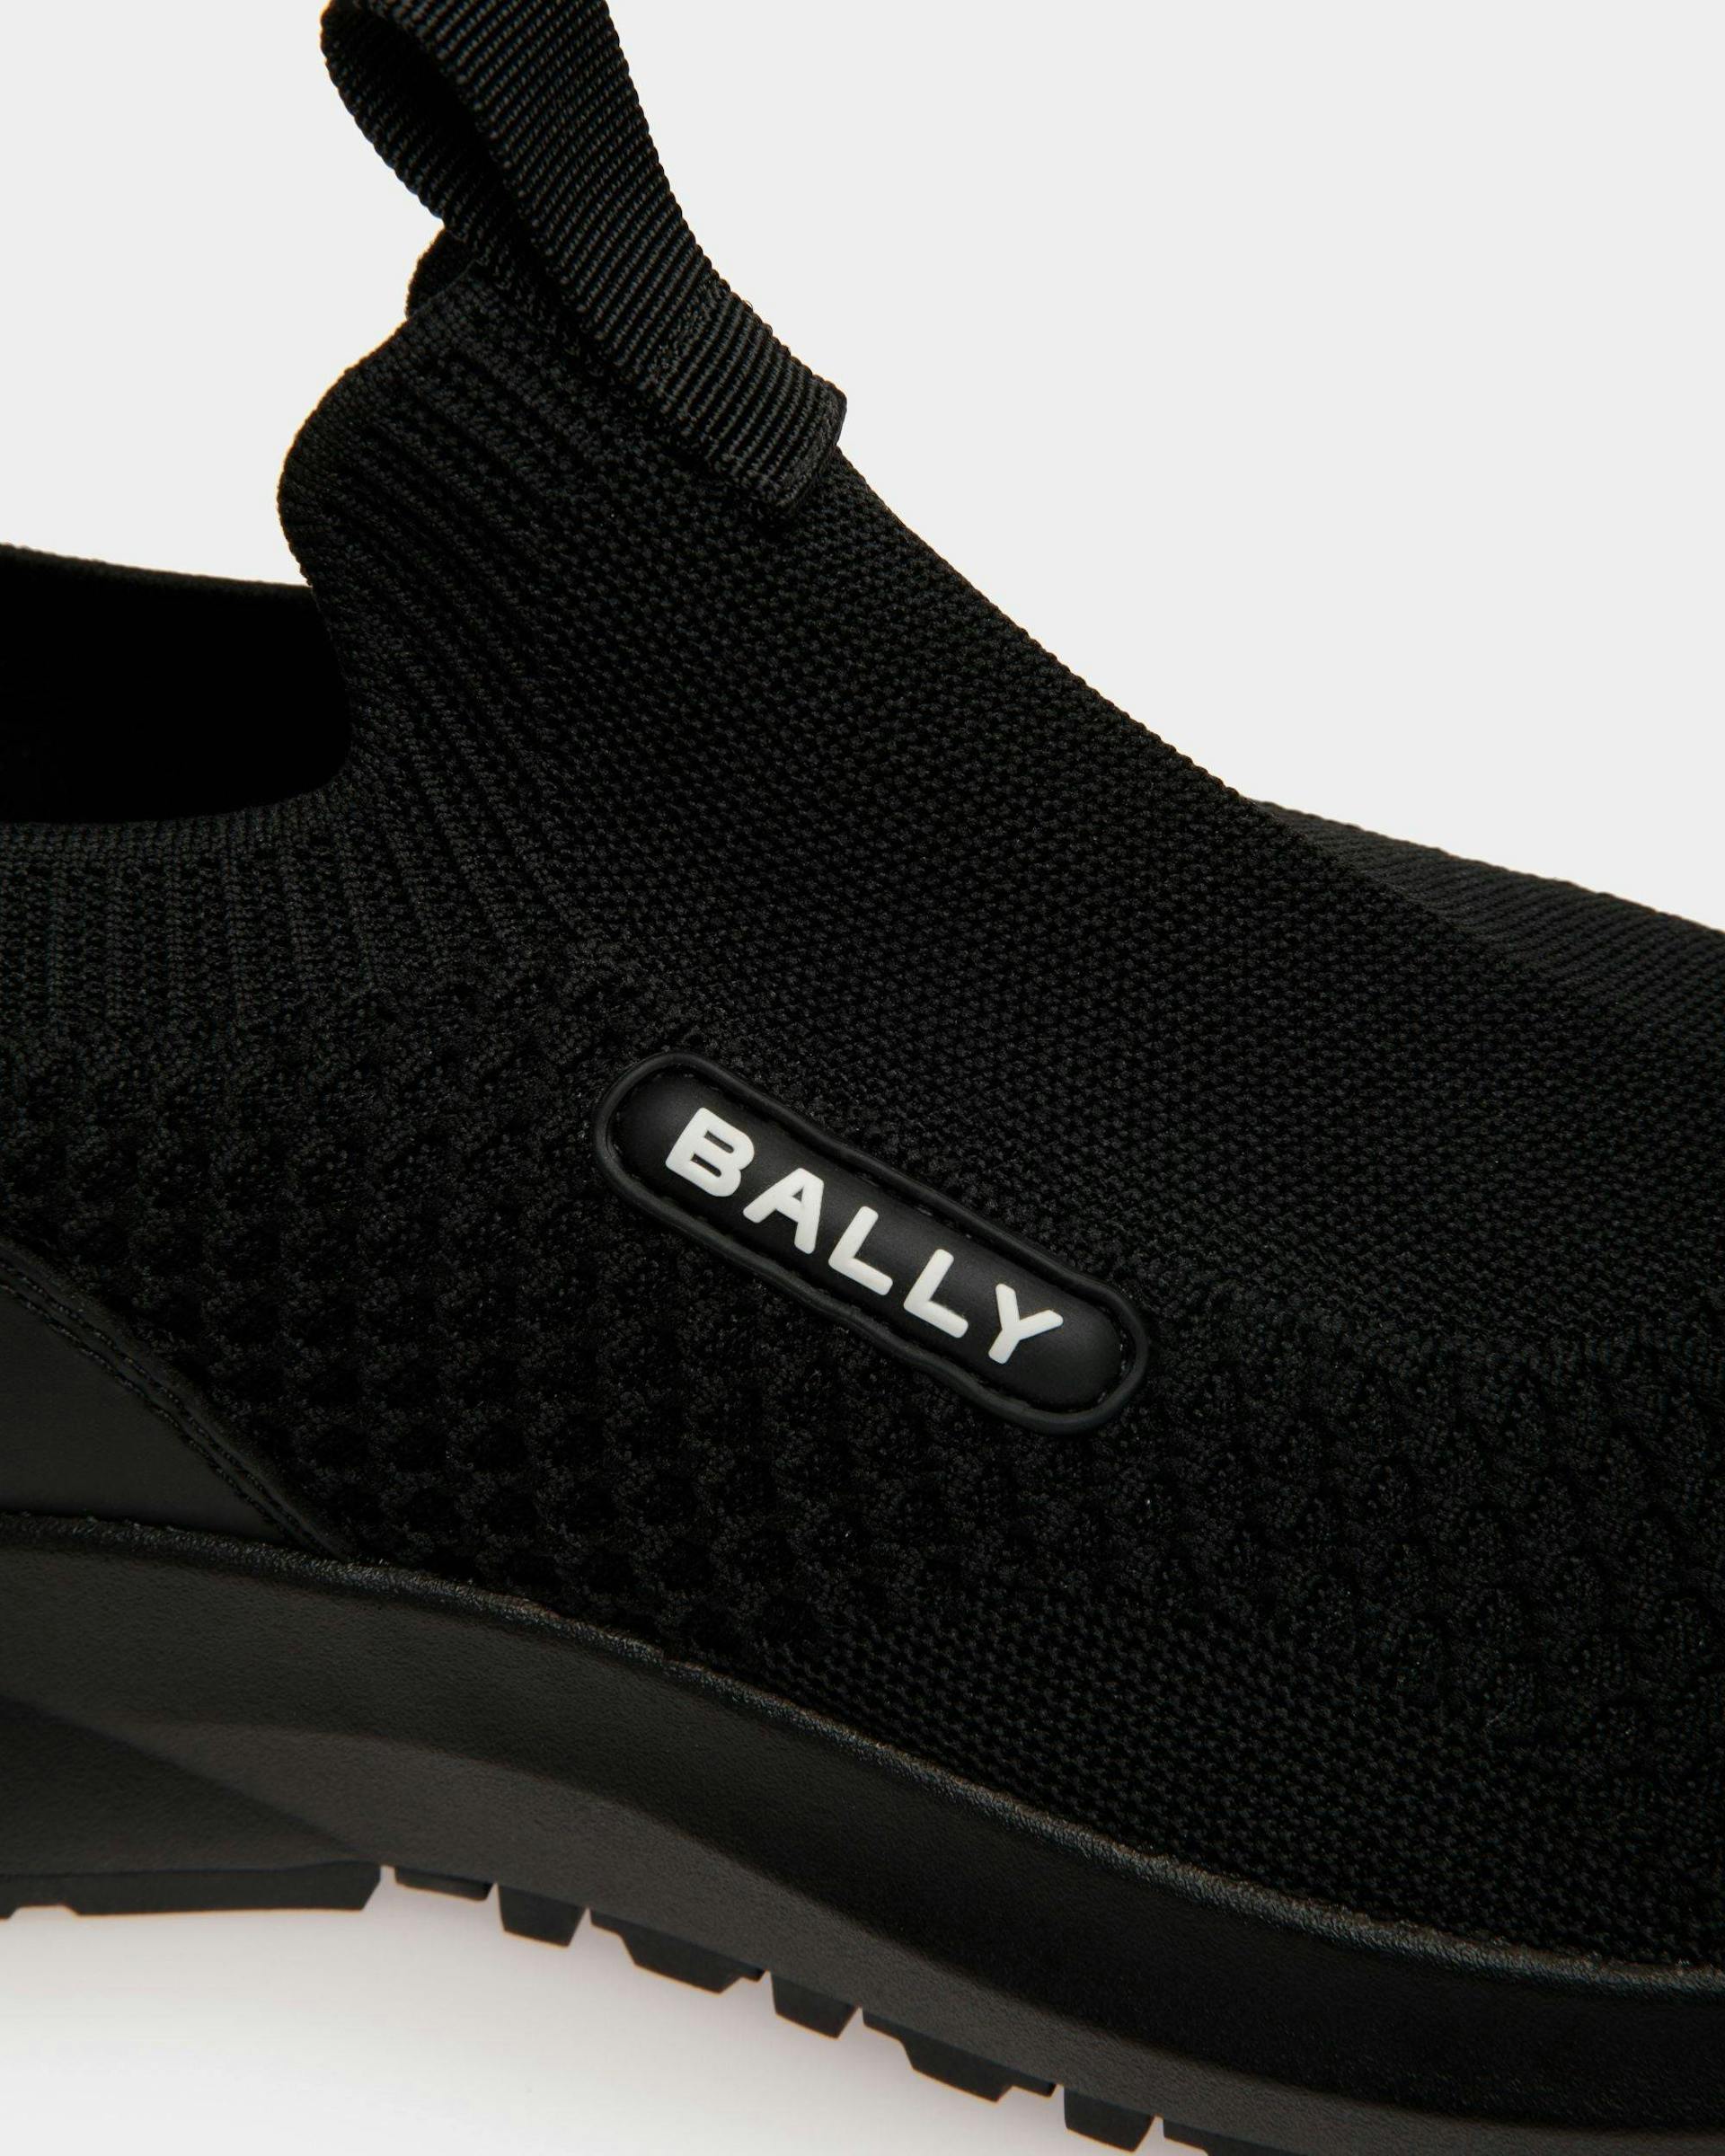 Men's Outline Sneaker in Black Nylon | Bally | Still Life Detail